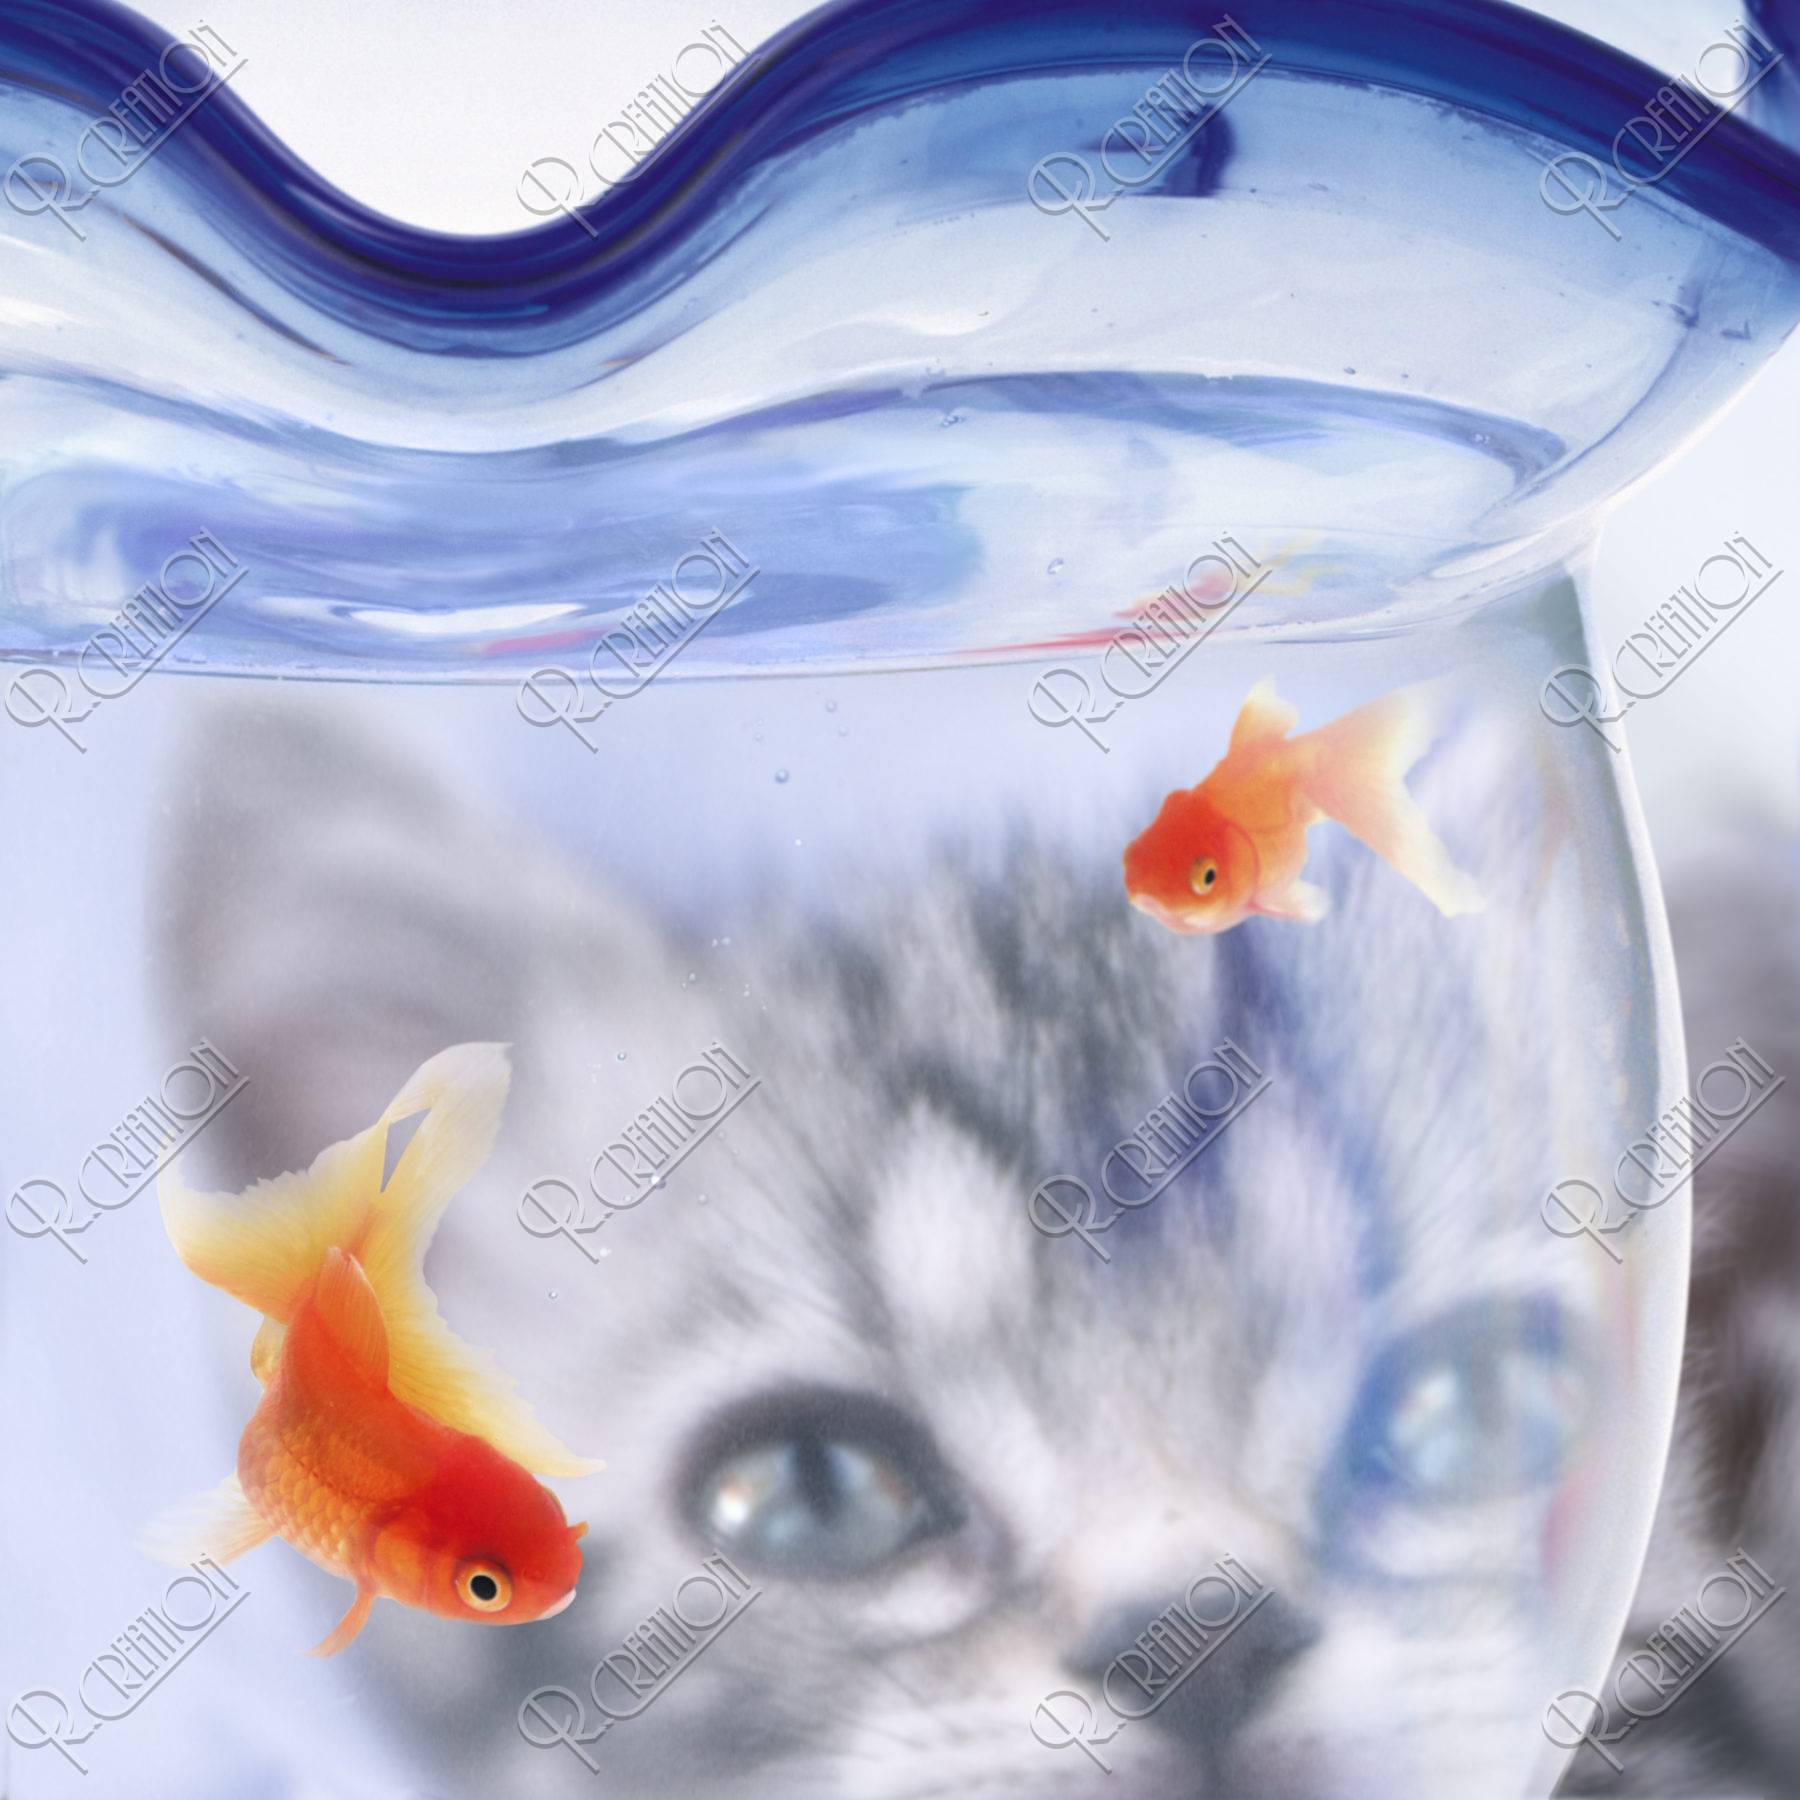 金魚 金魚鉢 猫 合成 夏イメージ アップ イラスト Cg アールクリエーション